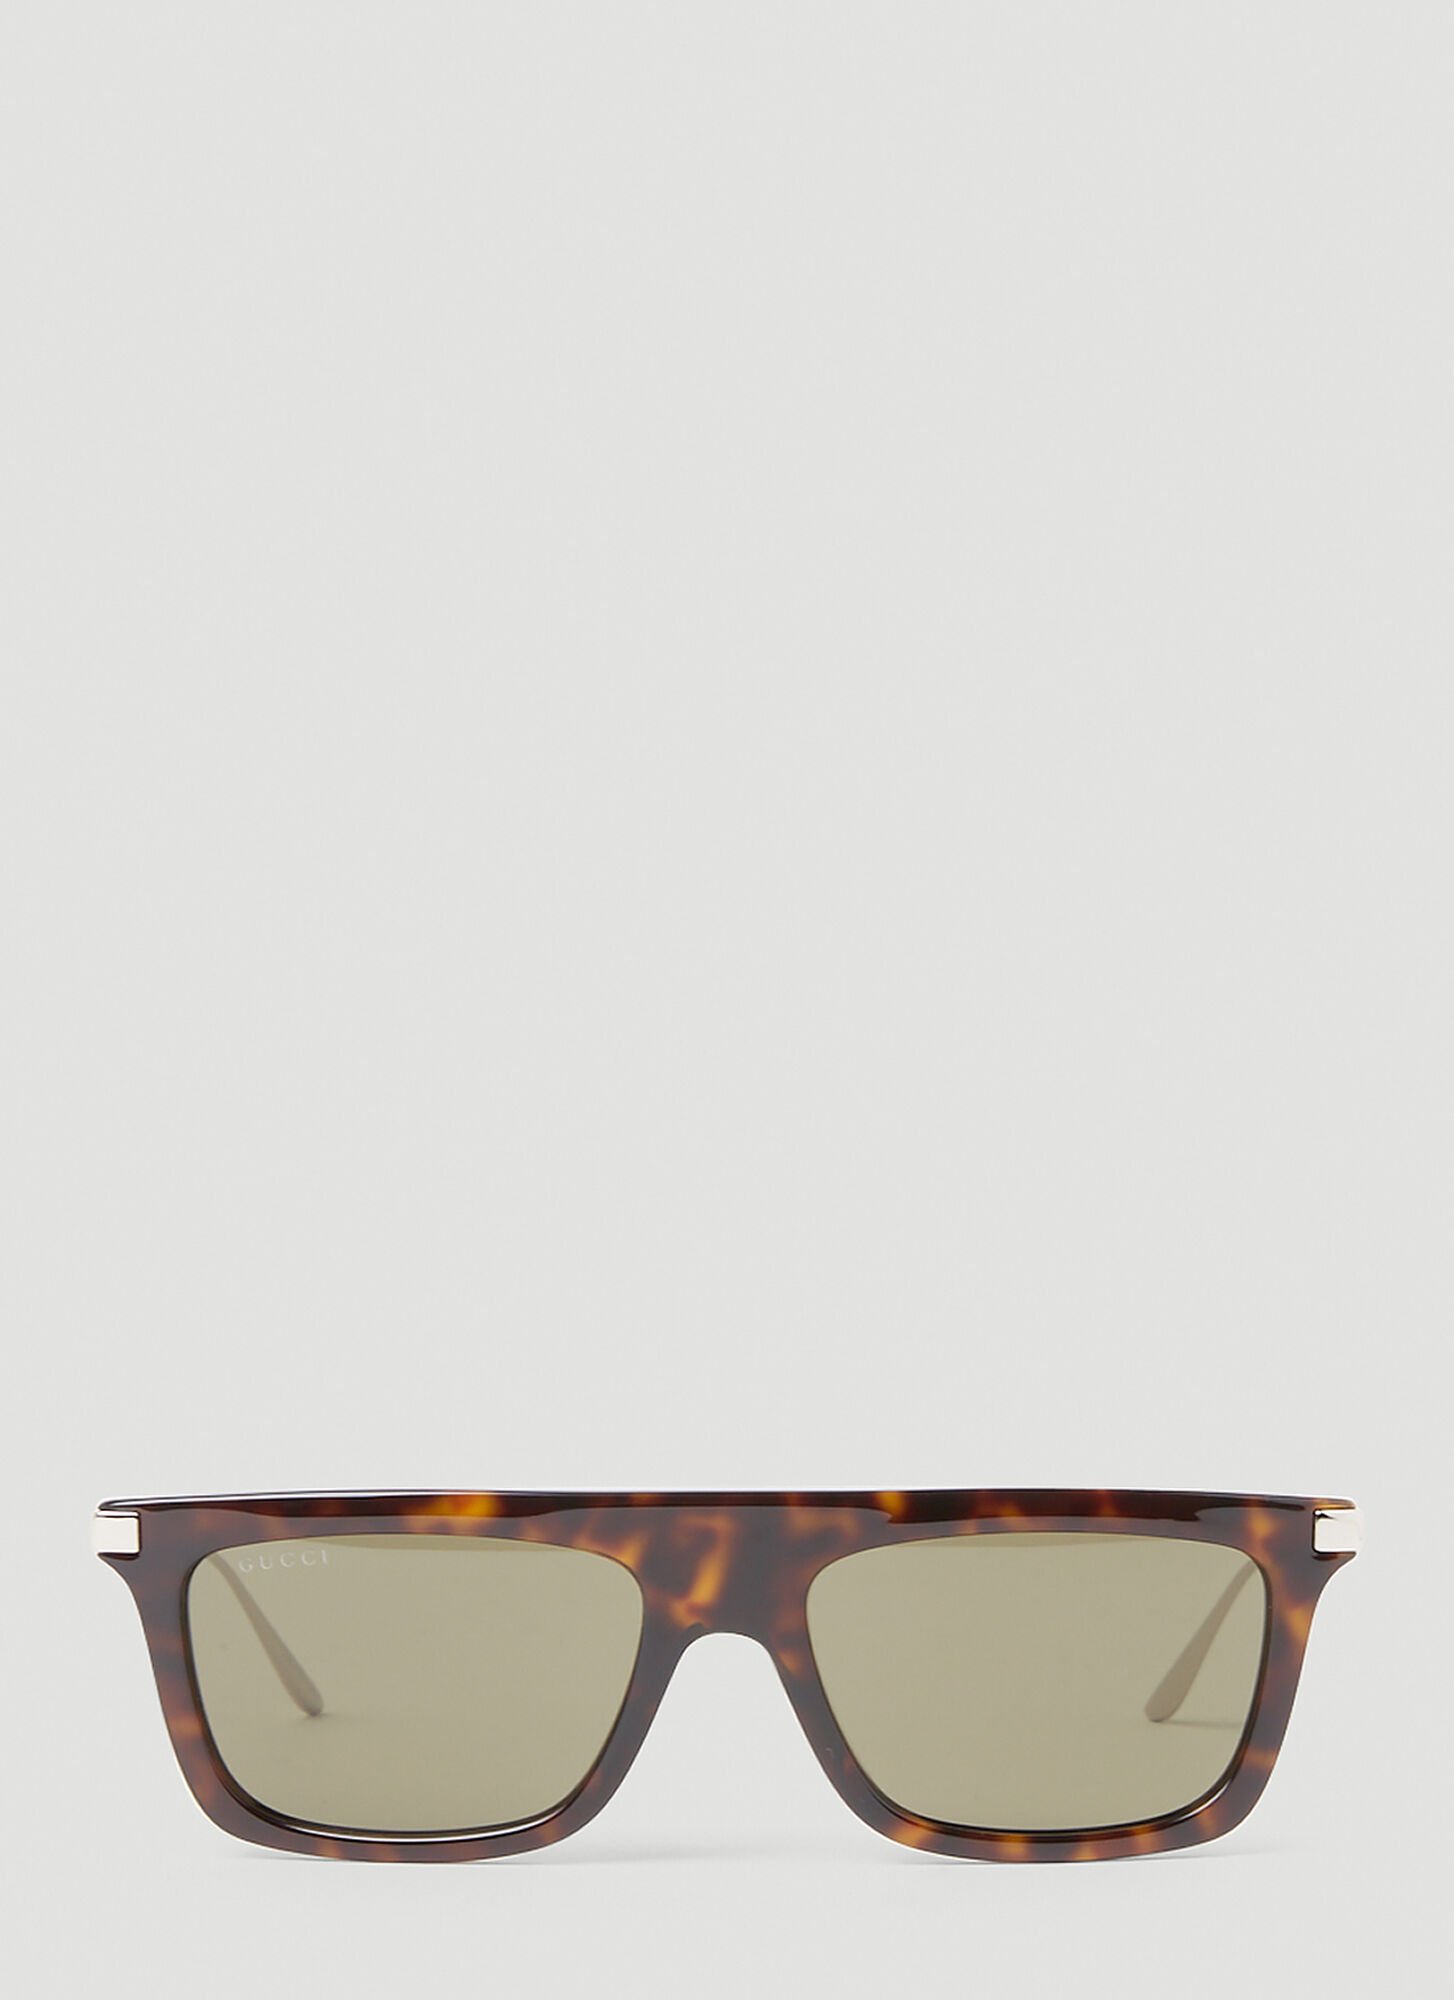 Gucci Tortoiseshell Rectangular Sunglasses In Brown